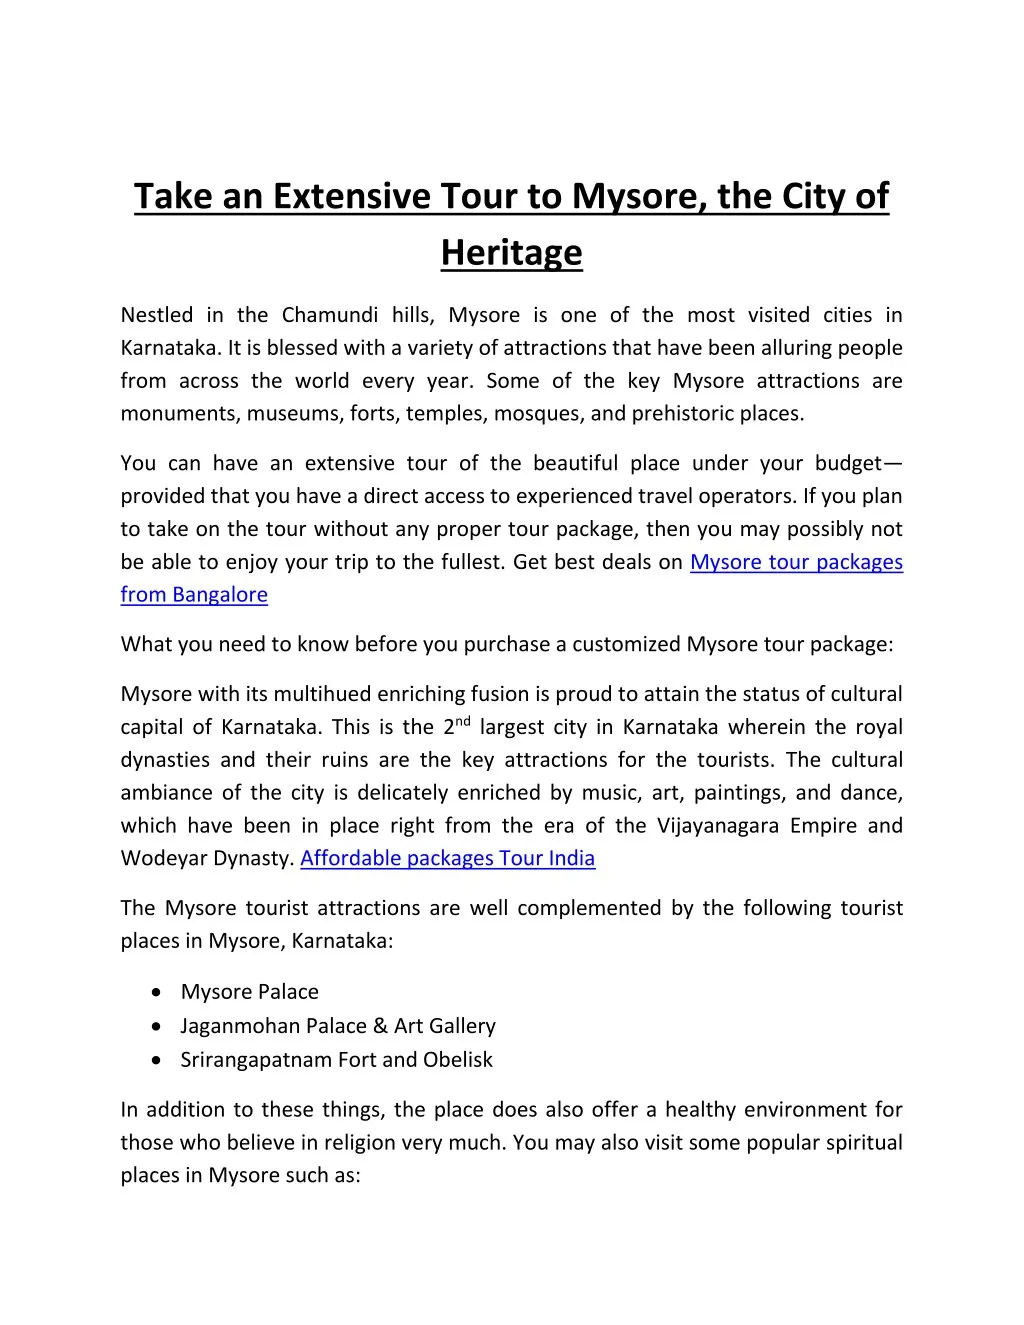 take an extensive tour to mysore the city